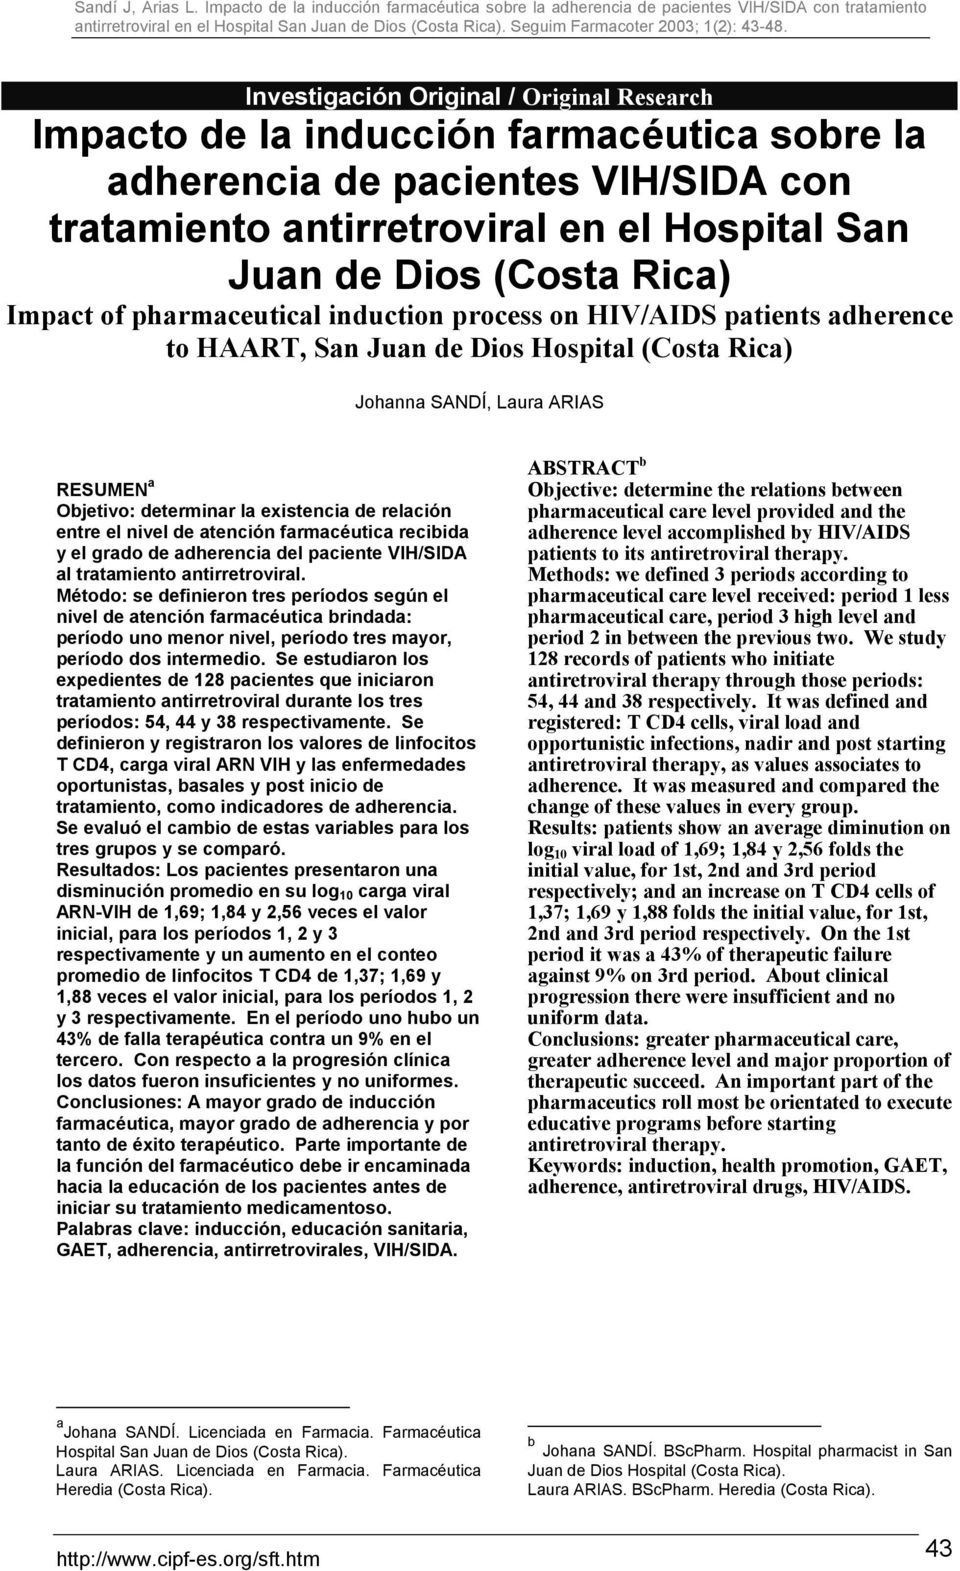 relación entre el nivel de atención farmacéutica recibida y el grado de adherencia del paciente VIH/SIDA al tratamiento antirretroviral.